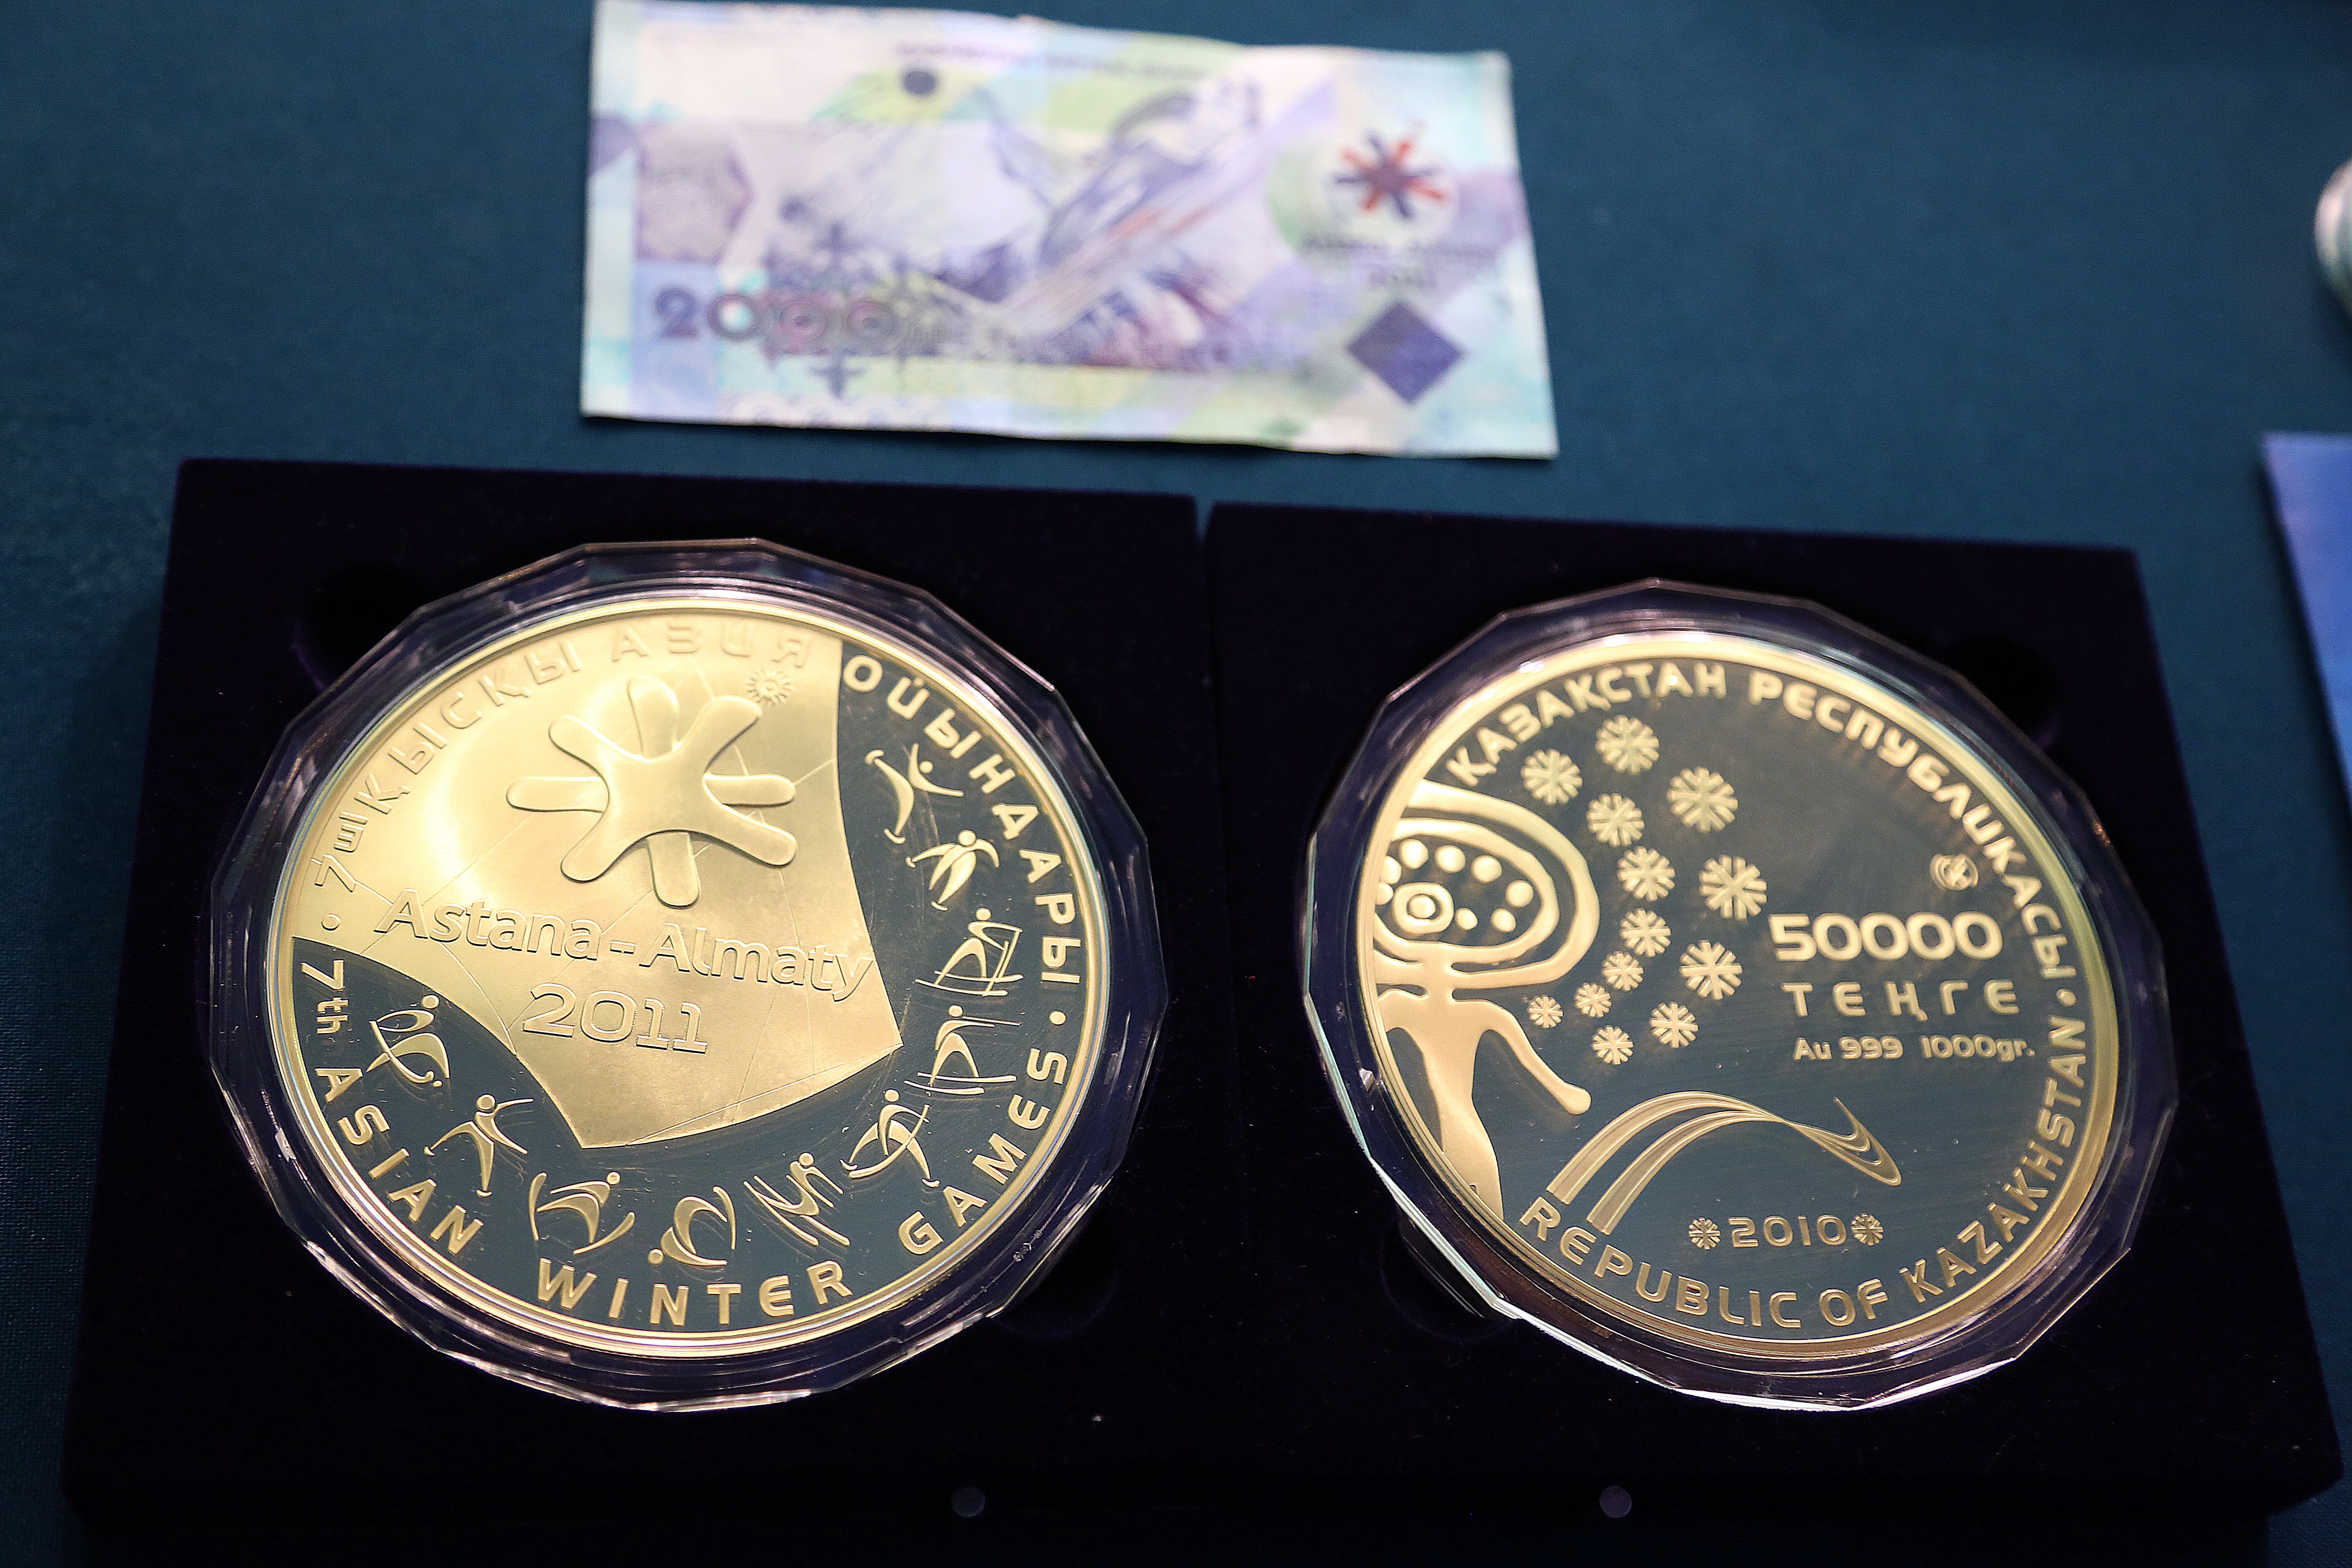 Самая первая килограммовая монета была посвящена 10-летию независимости Казахстана. Она была предназначена для дарения гостям из ближнего и дальнего зарубежья. Эта монеты была оформлена в двух вариантах: в восточном и европейском стиле. 
К 20-летию введения национальной валюты была выпущена золотая монета весом 2 килограмма. Номинал монеты 100 000 тенге. Ее стоимость достигла 25 млн. тенге. Также к этому событию была изготовлена серебряная монета, номиналом 5 тысяч тенге. Она весит не более 1 килограмма. 